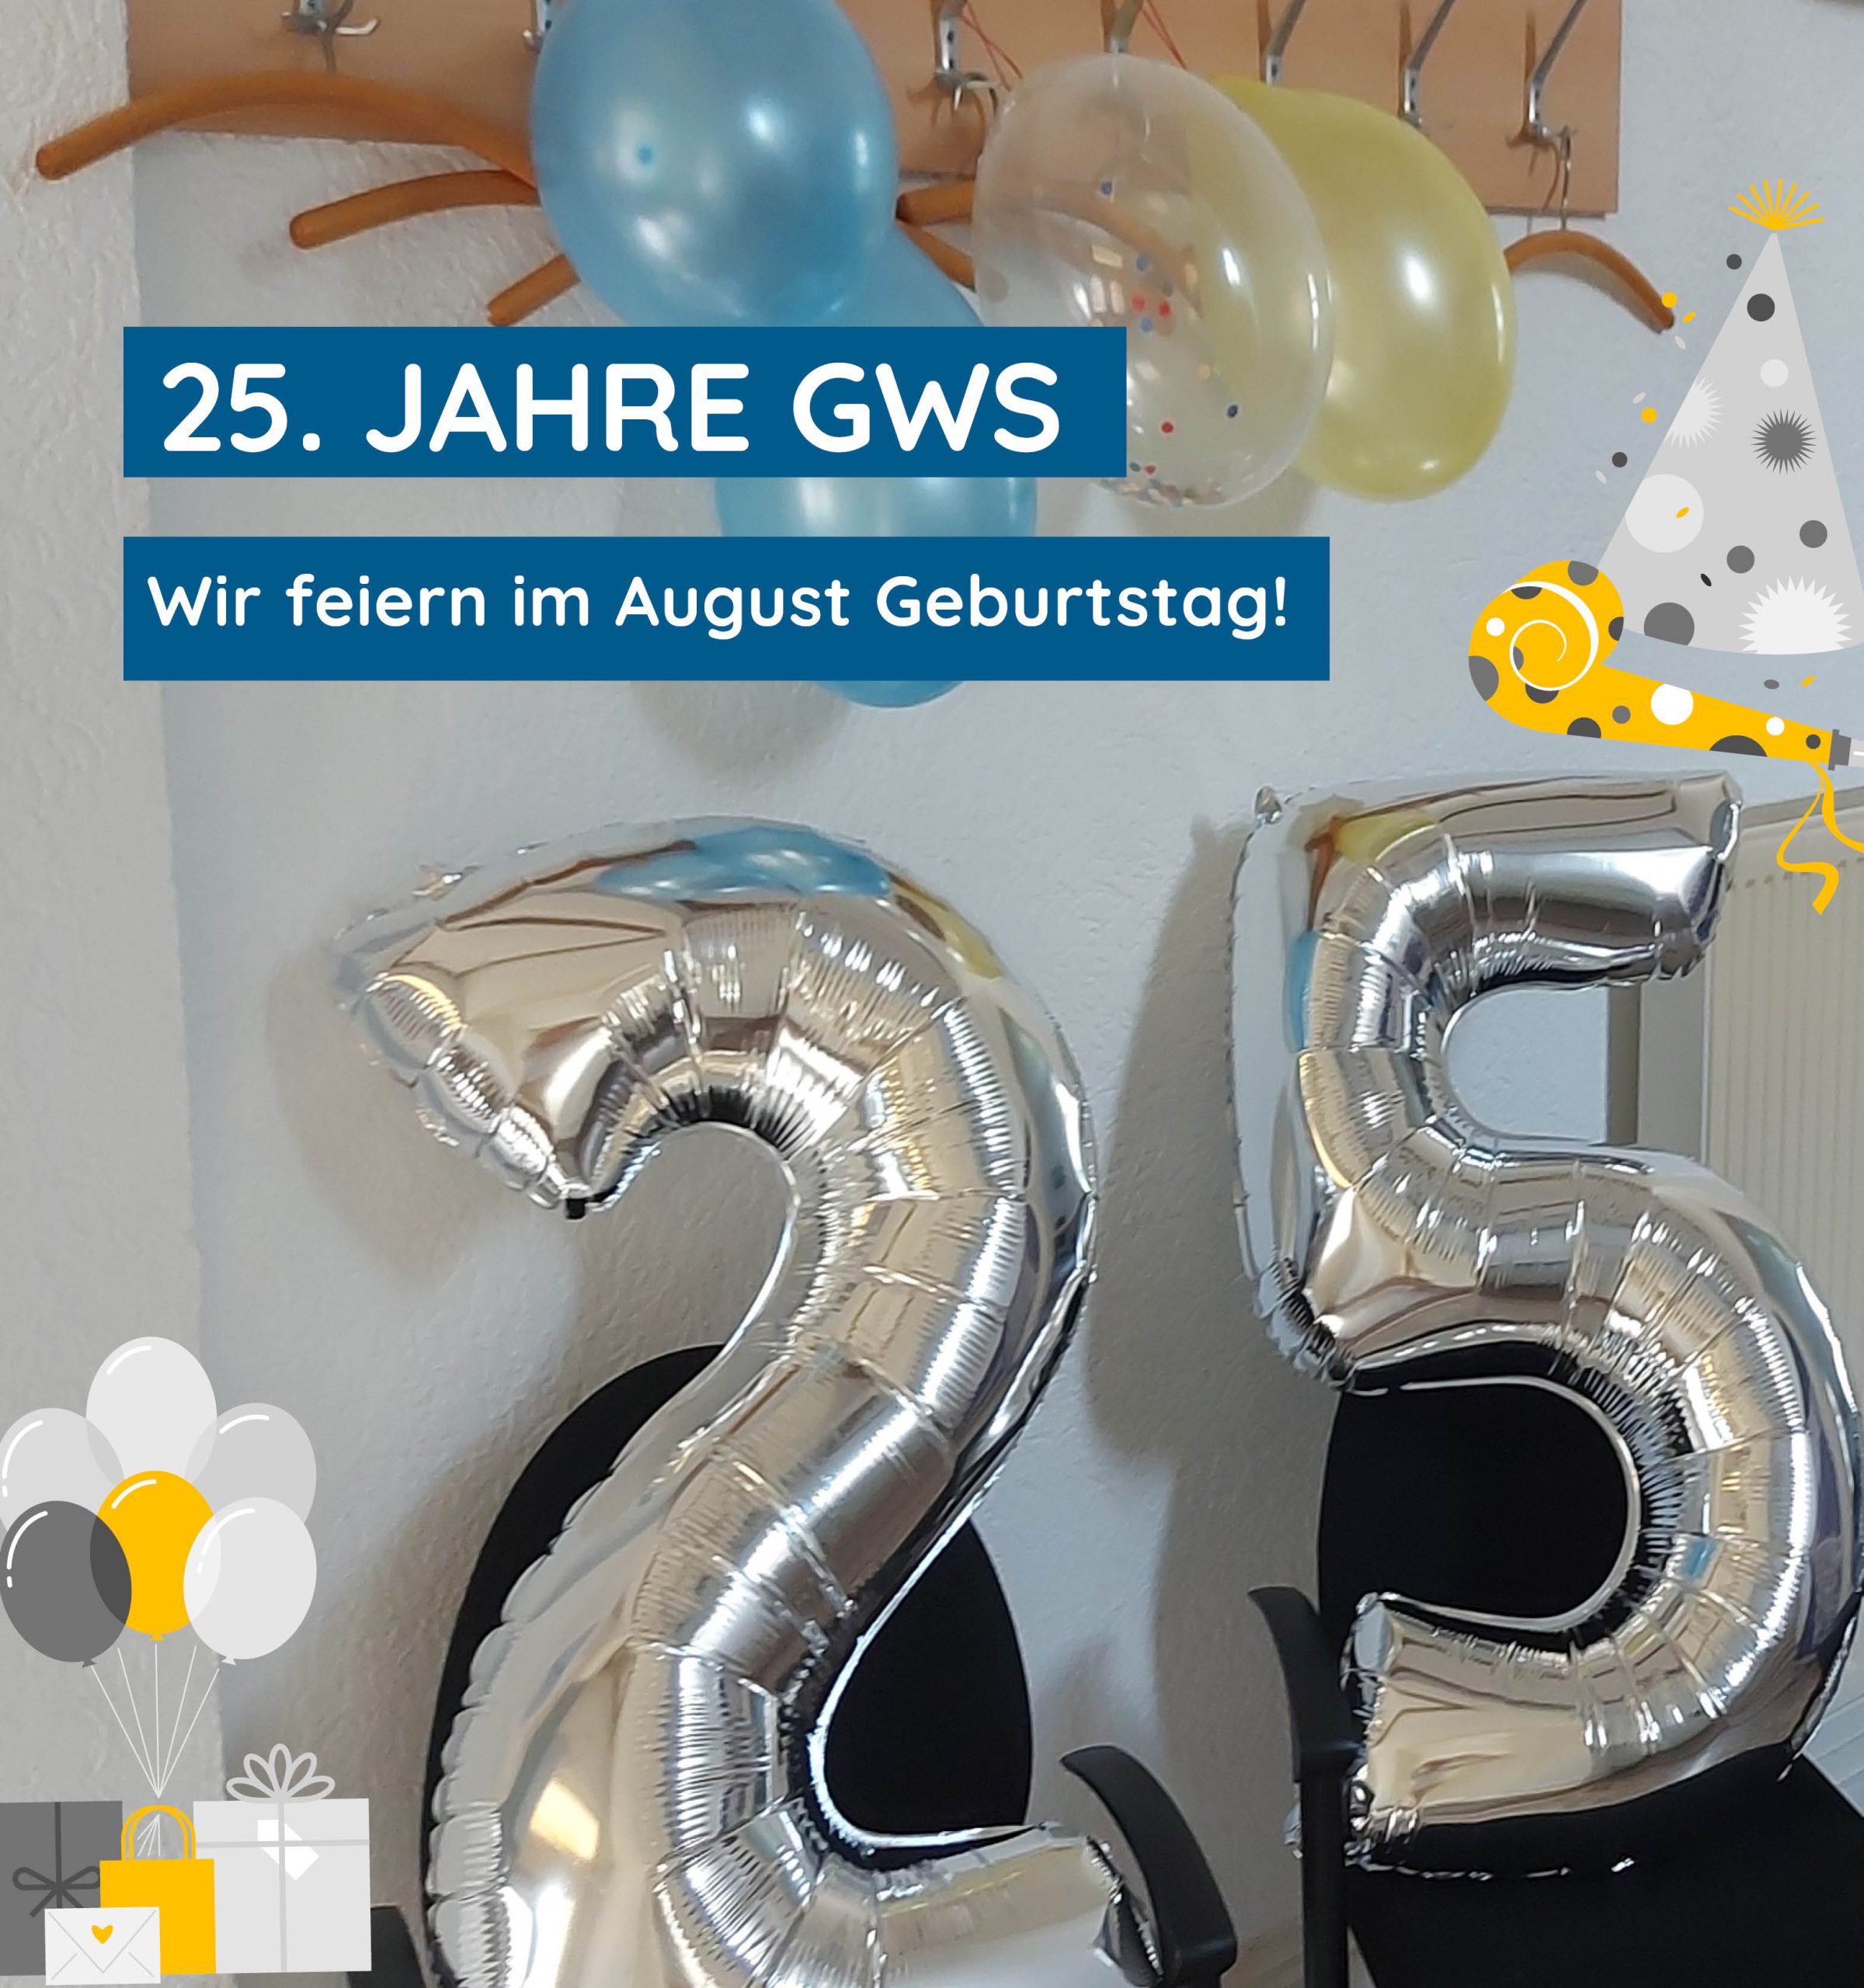 GWS feiert im August 25-jähriges Jubiläum